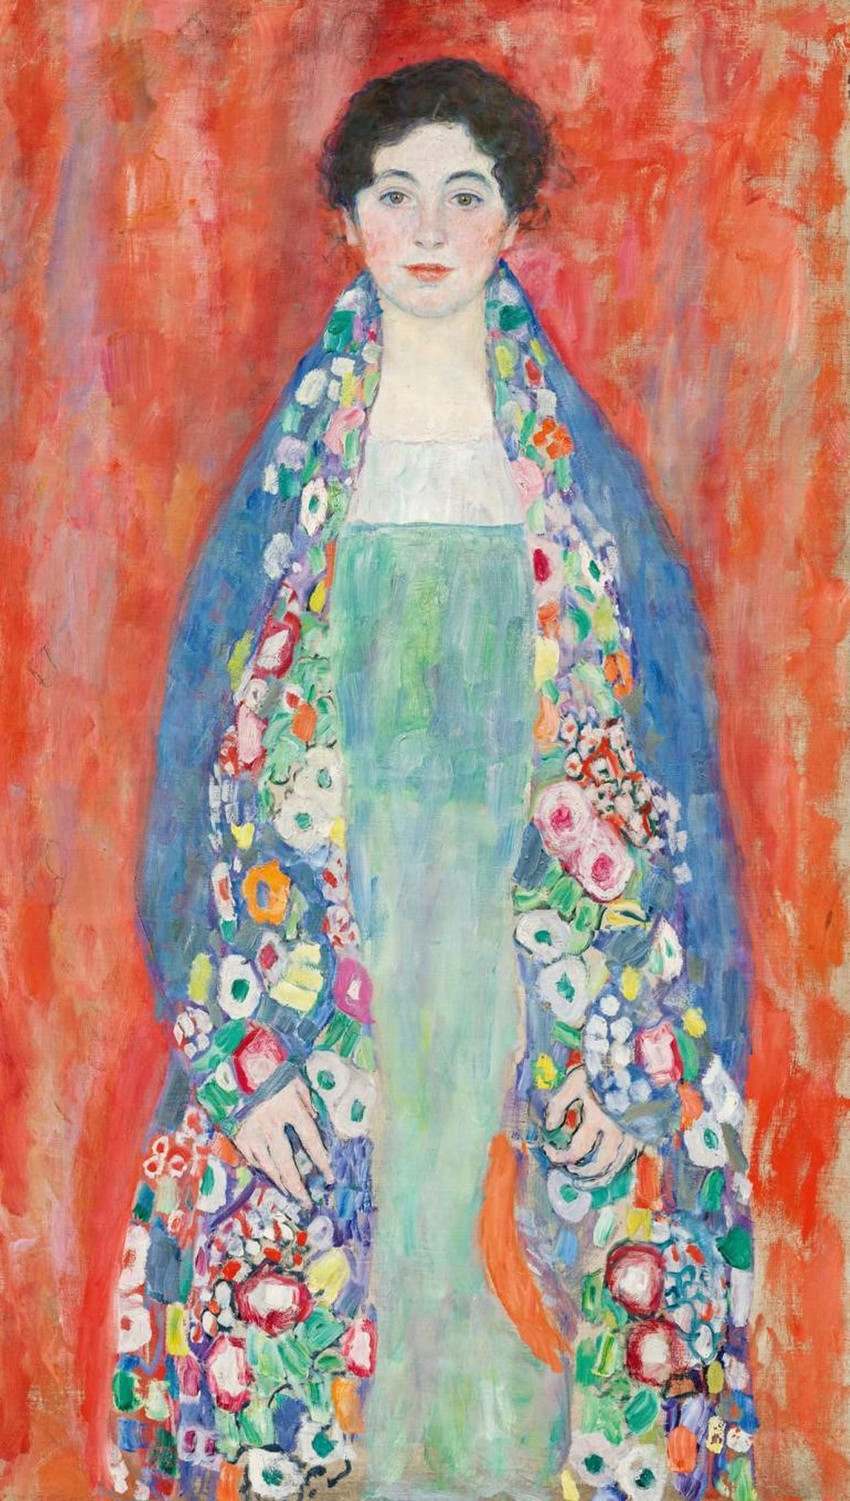 Yaklaşık 100 yıldır kayıp olduğu düşünülen Gustav Klimt’e ait “Bayan Lieser'in Portresi” adlı tablo 32 milyon dolara alıcı buldu.